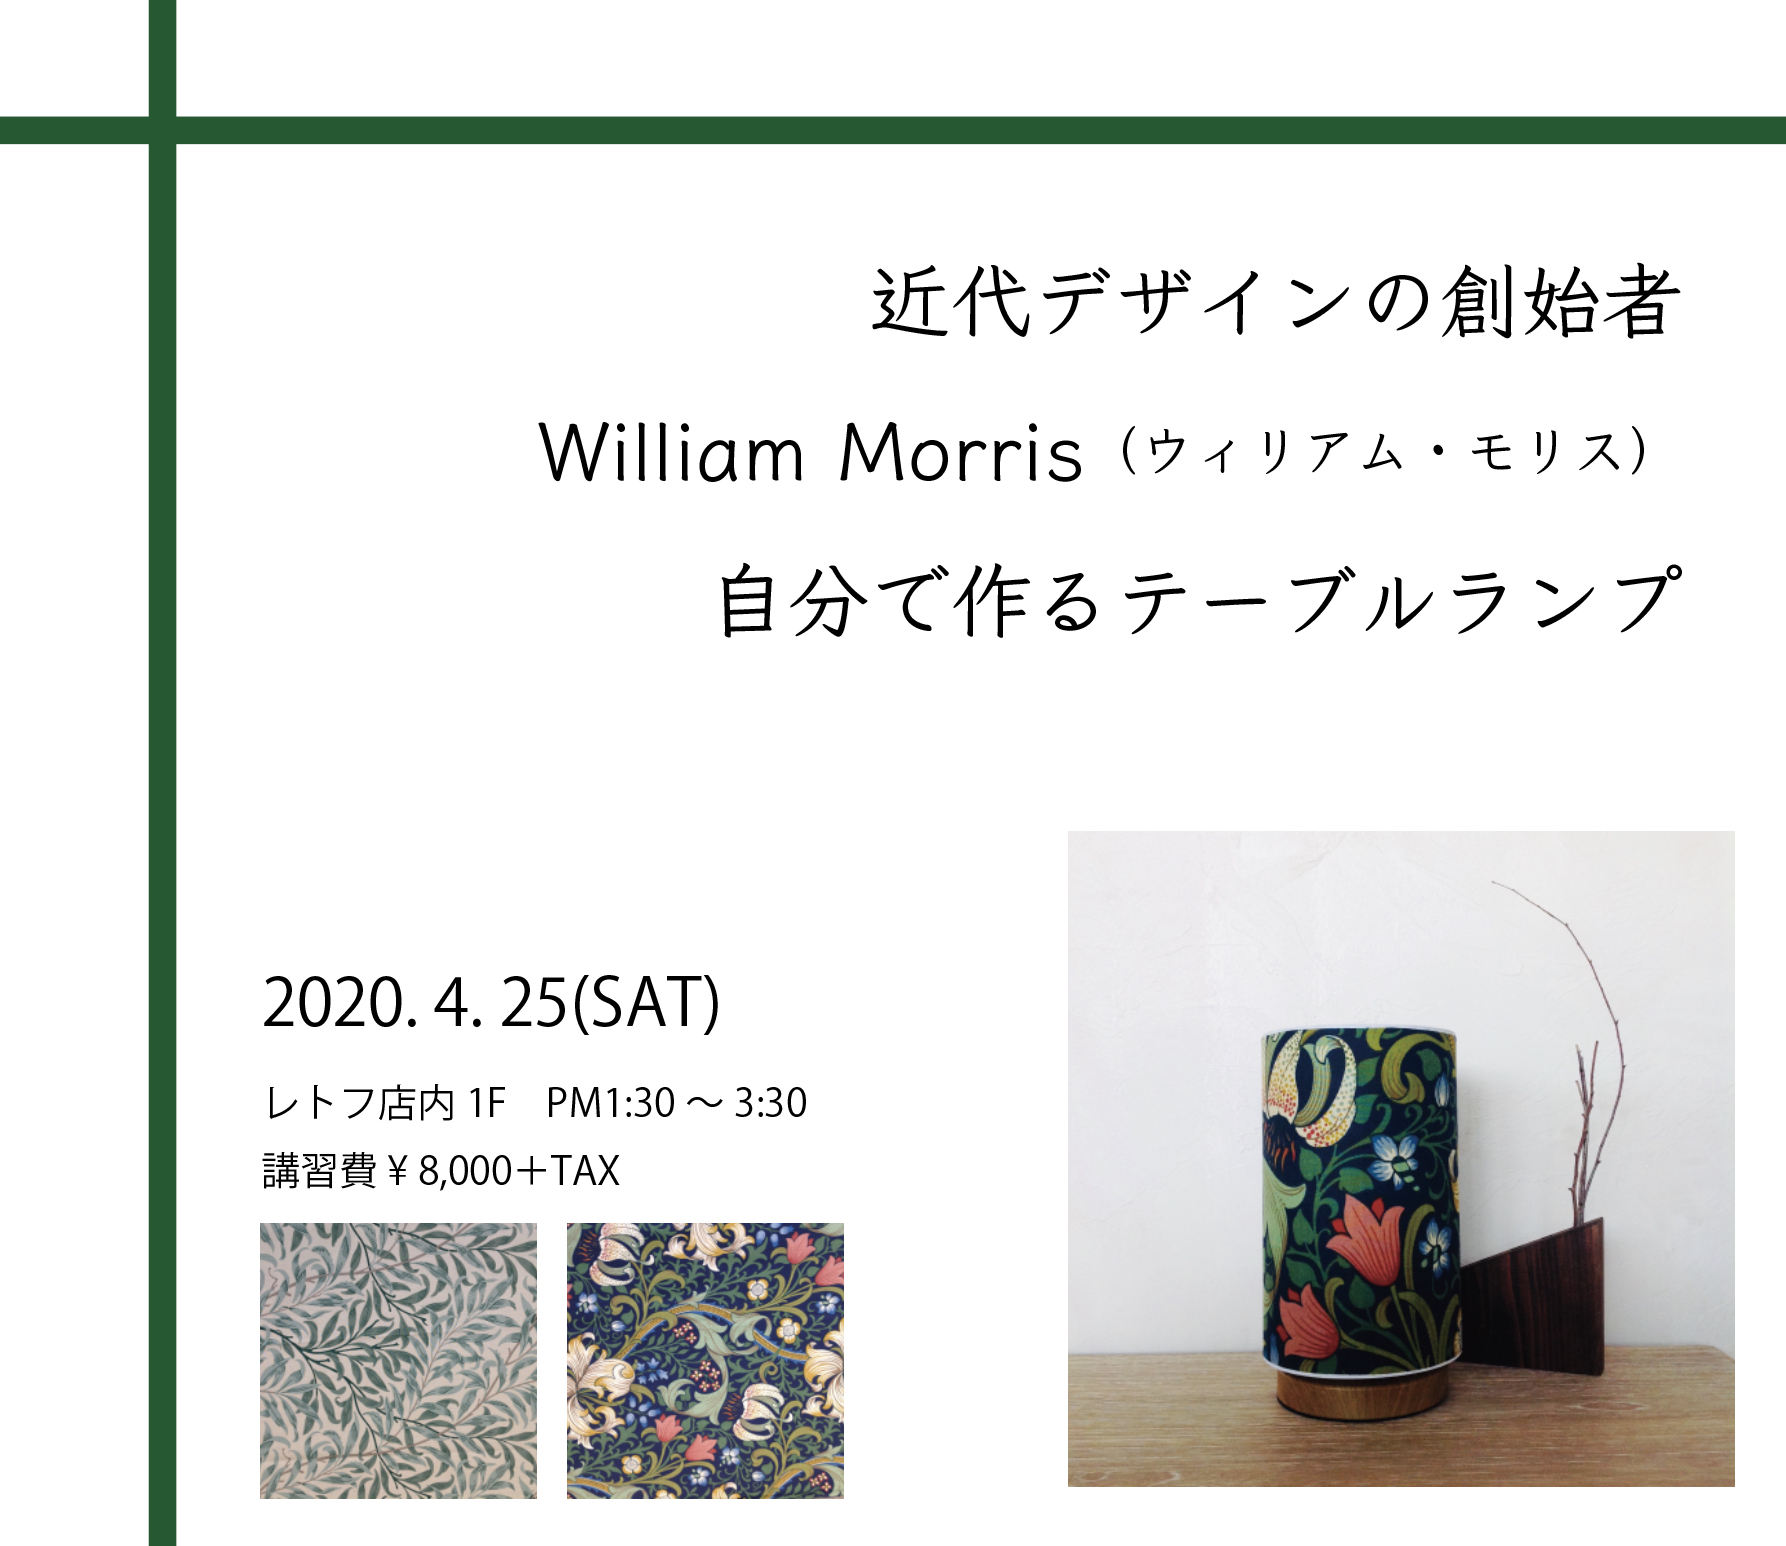 William Morris(ウィリアムモリス)のテーブルランプを作ろう♪